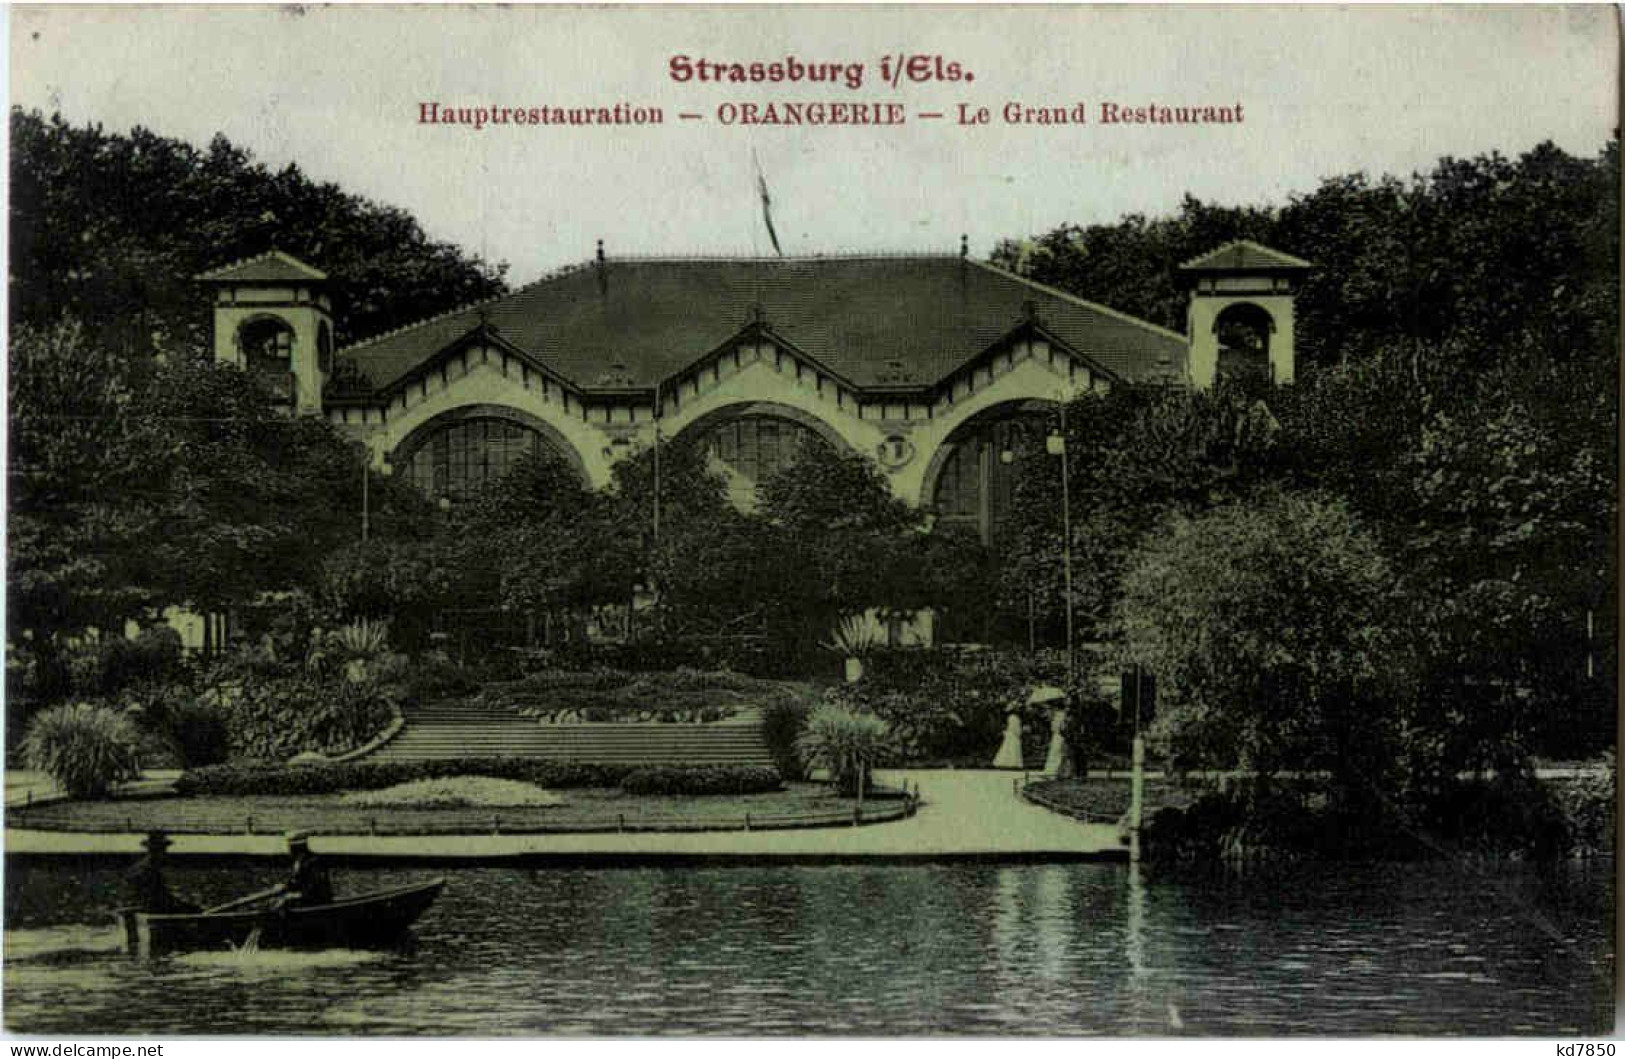 Strassburg - Orangerie - Strasbourg